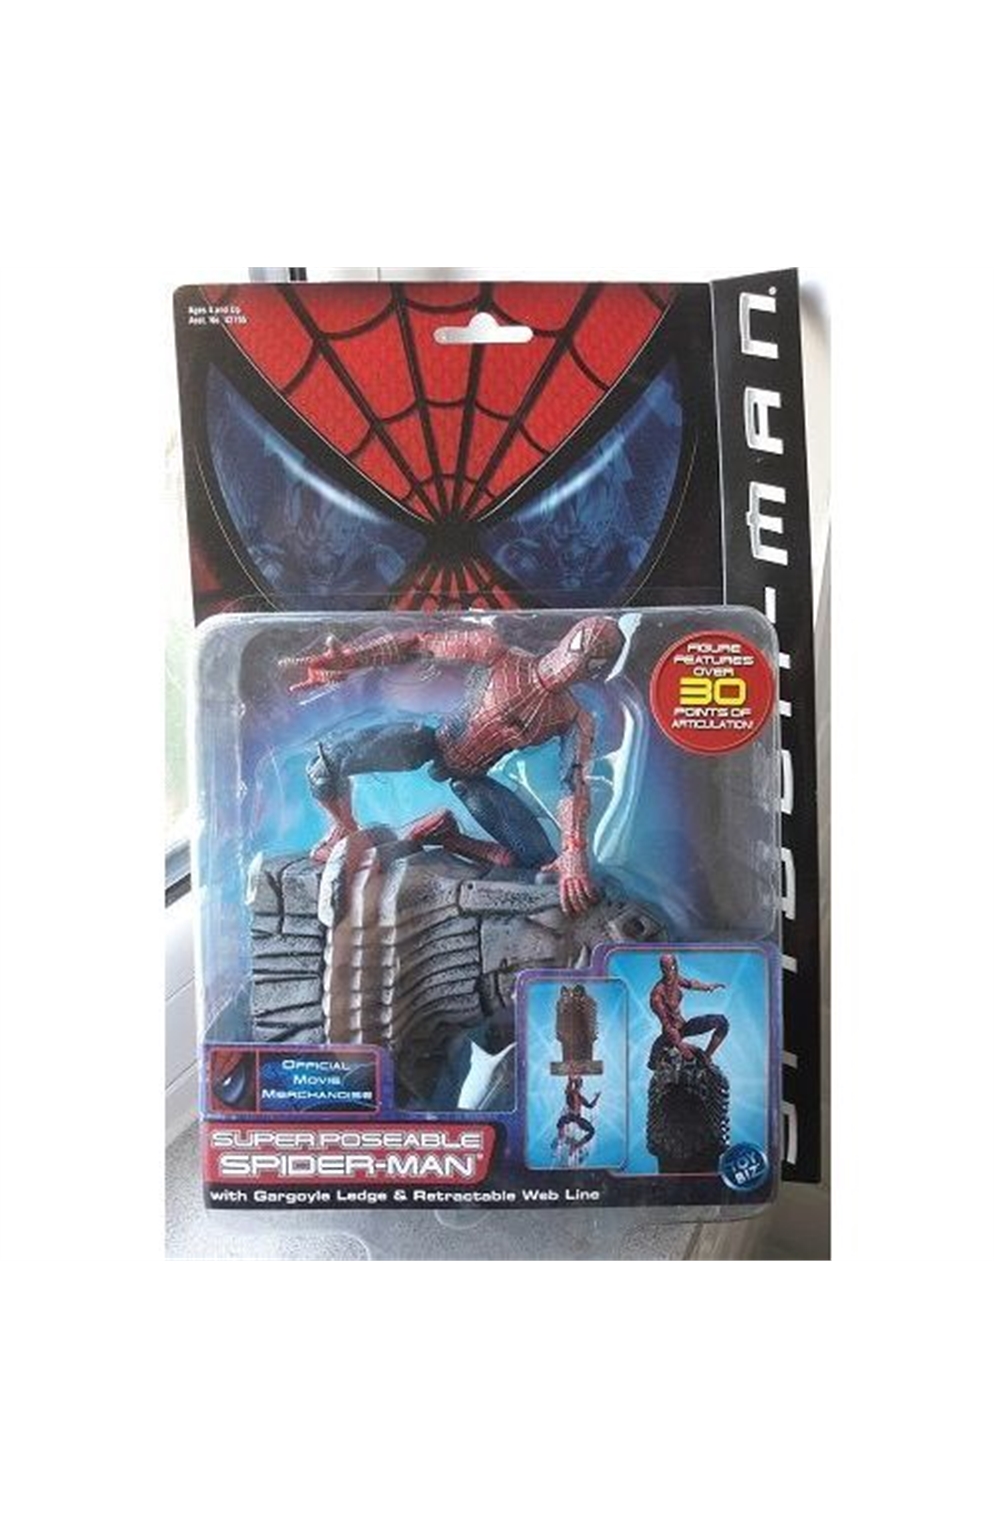 Toy Biz 2002 Spider-Man Movie Super Poseable Spider-Man With Gargoyle